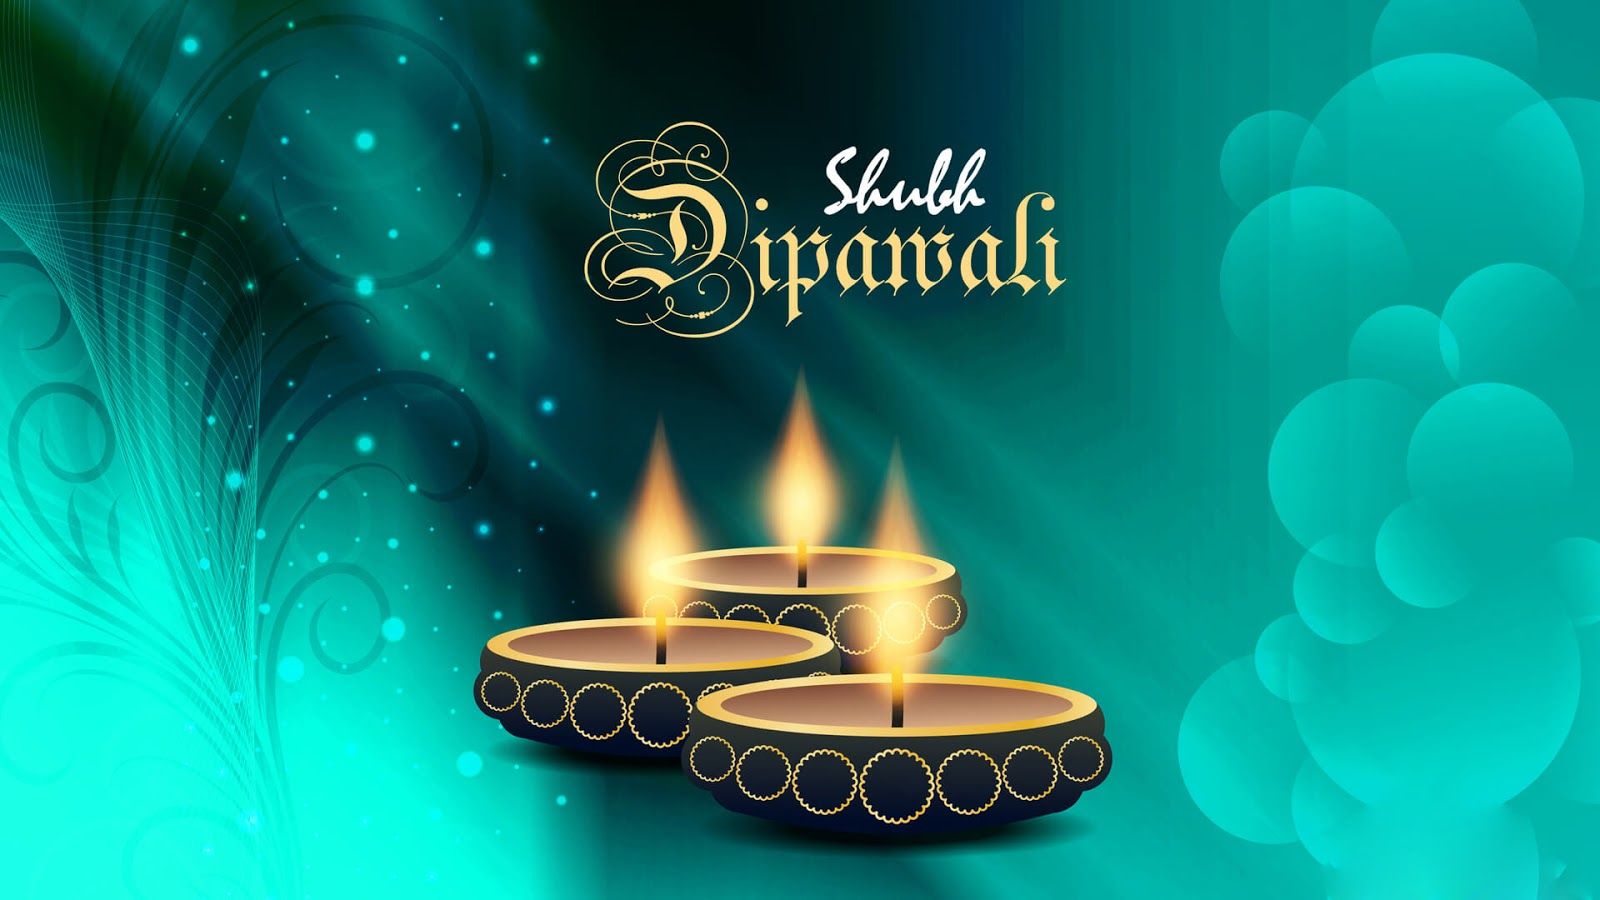 Happy Diwali Wallpaper 2020 in HD Free Download